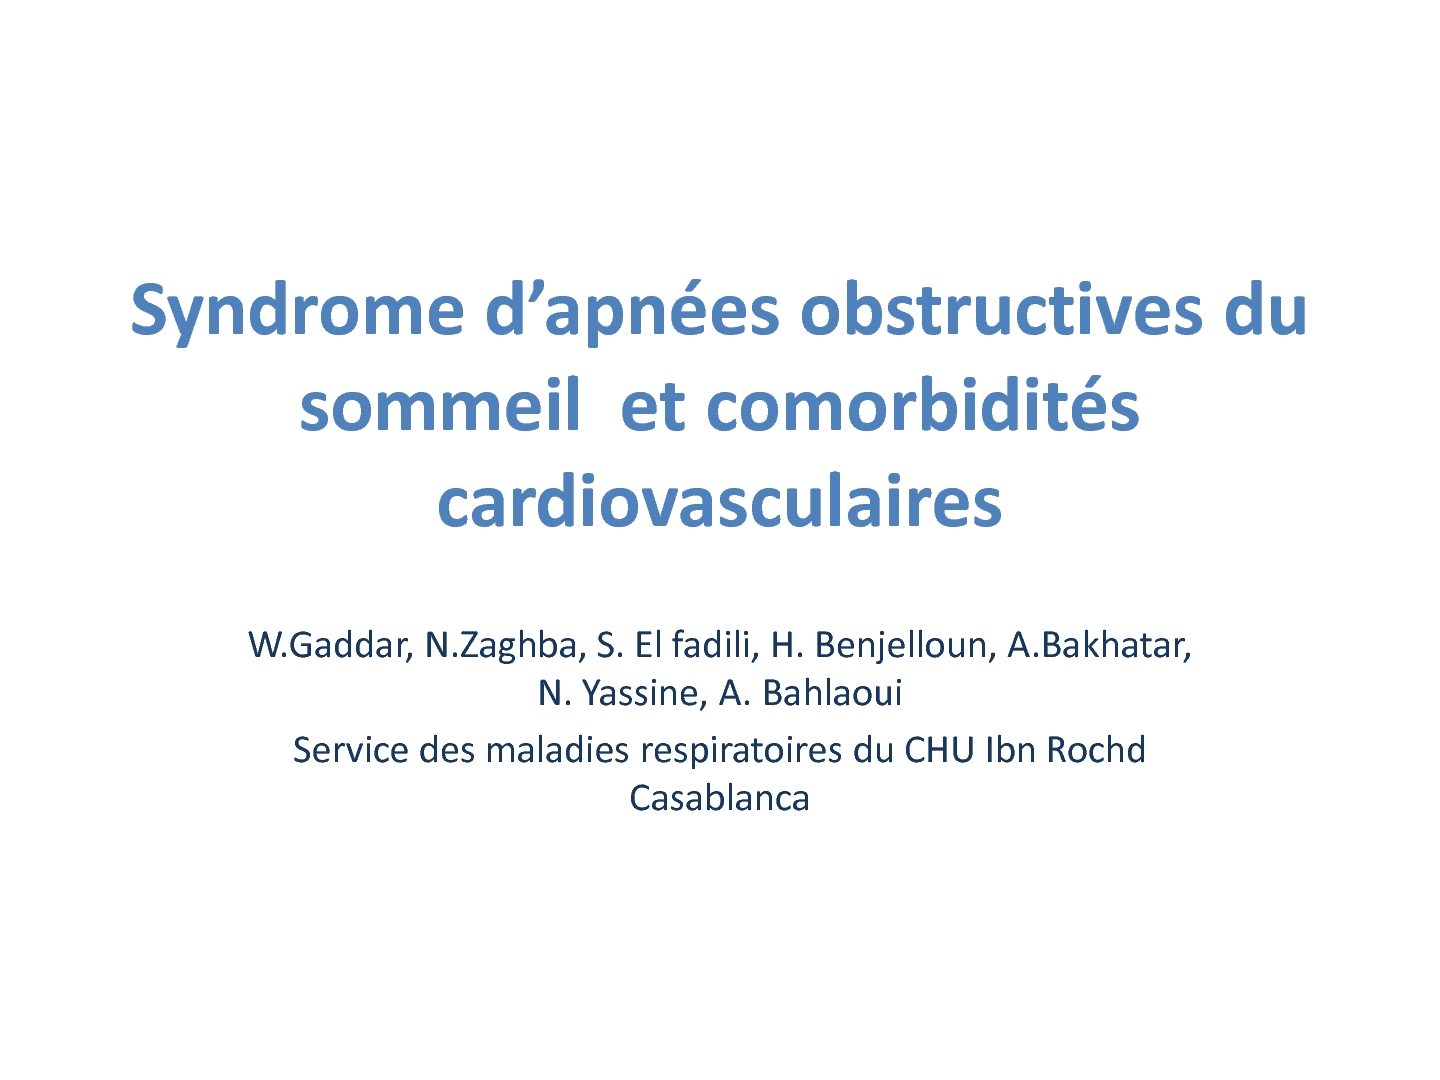 Syndrome d'apnée obstructive du sommeil et comorbidités cardiovasculaires. W GADDAR